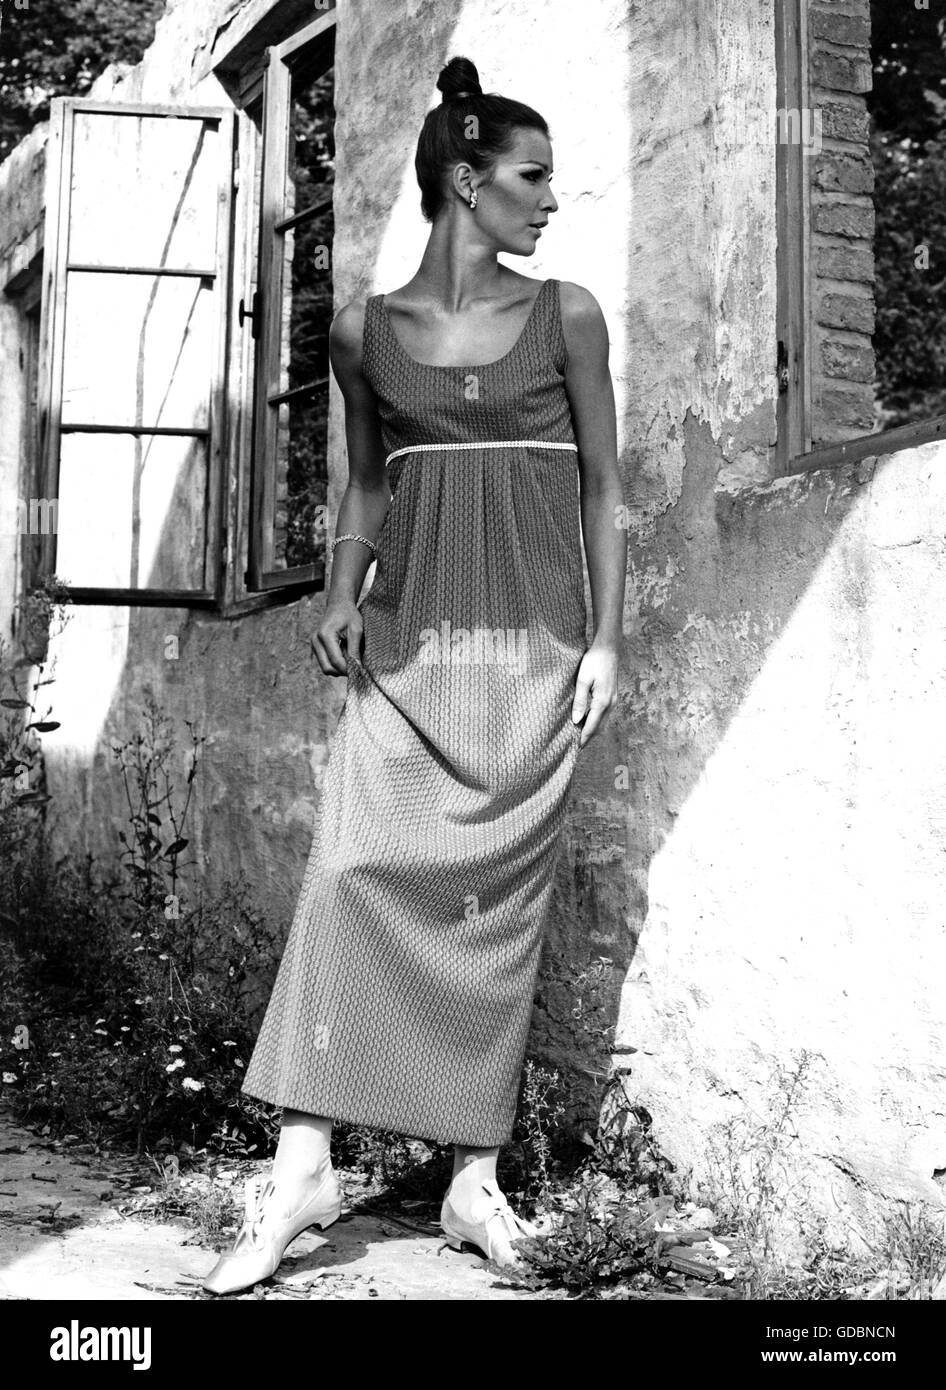 Mode, 60er Jahre, Sommerkleid, ein Mdoel trägt ein Sommerkleid aus Viskose  im Empire-Stil, Additional-Rights-Clearences-not available Stockfotografie  - Alamy